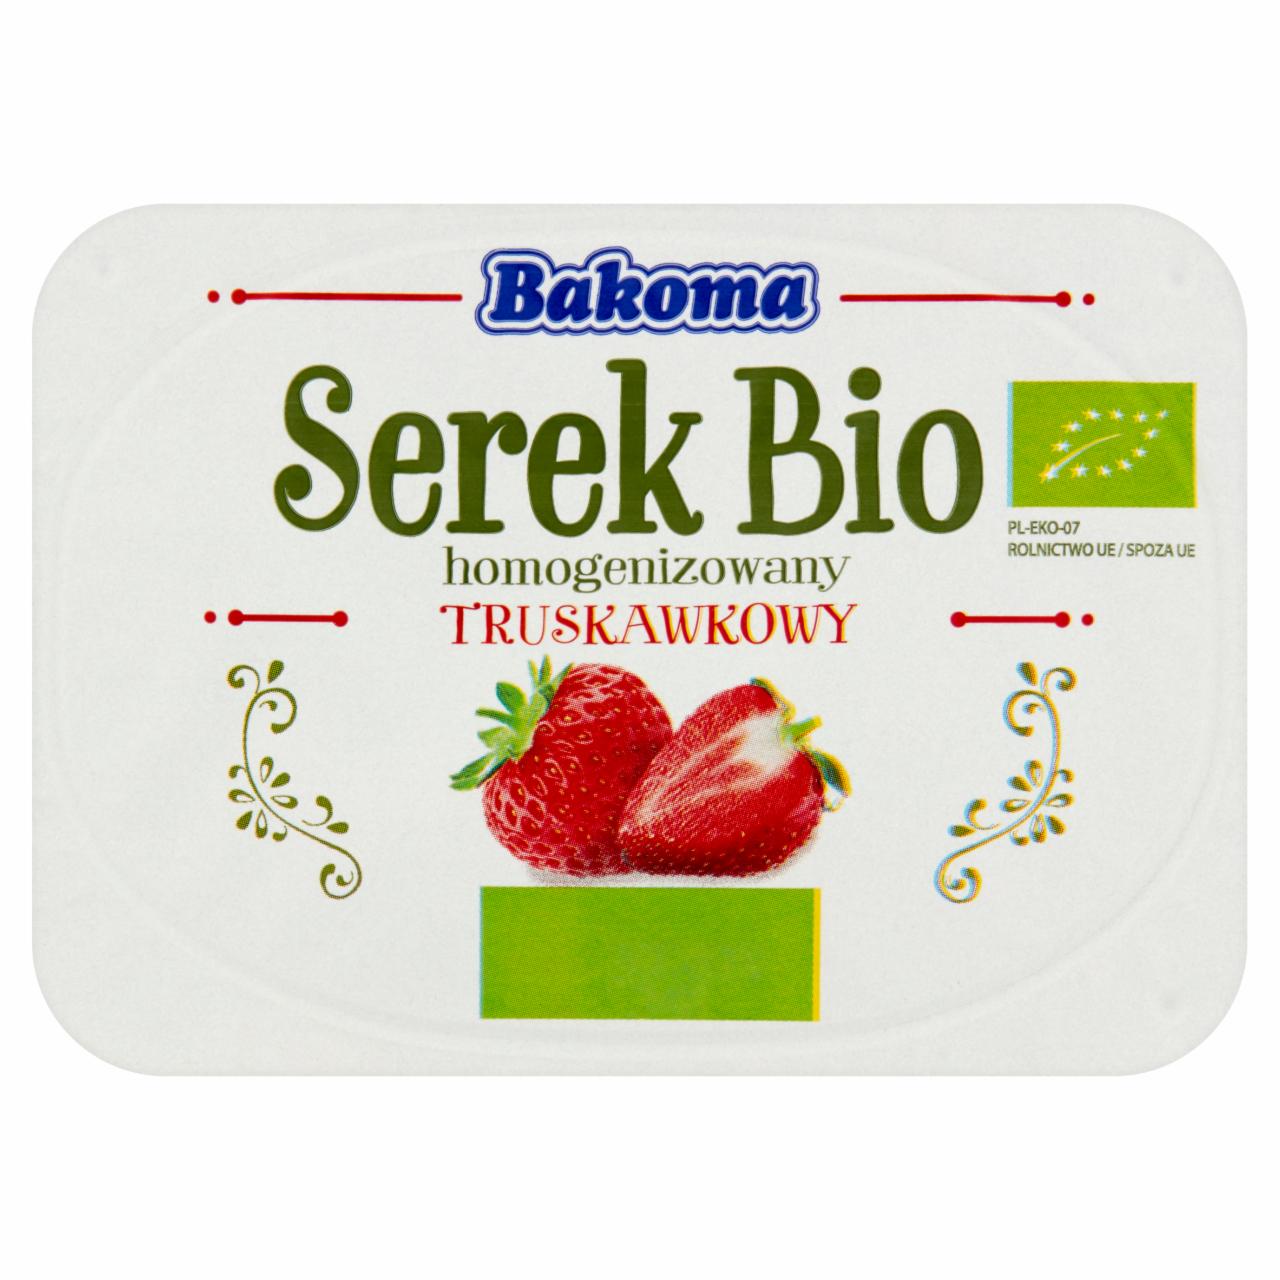 Zdjęcia - Bakoma Serek Bio homogenizowany truskawkowy 140 g